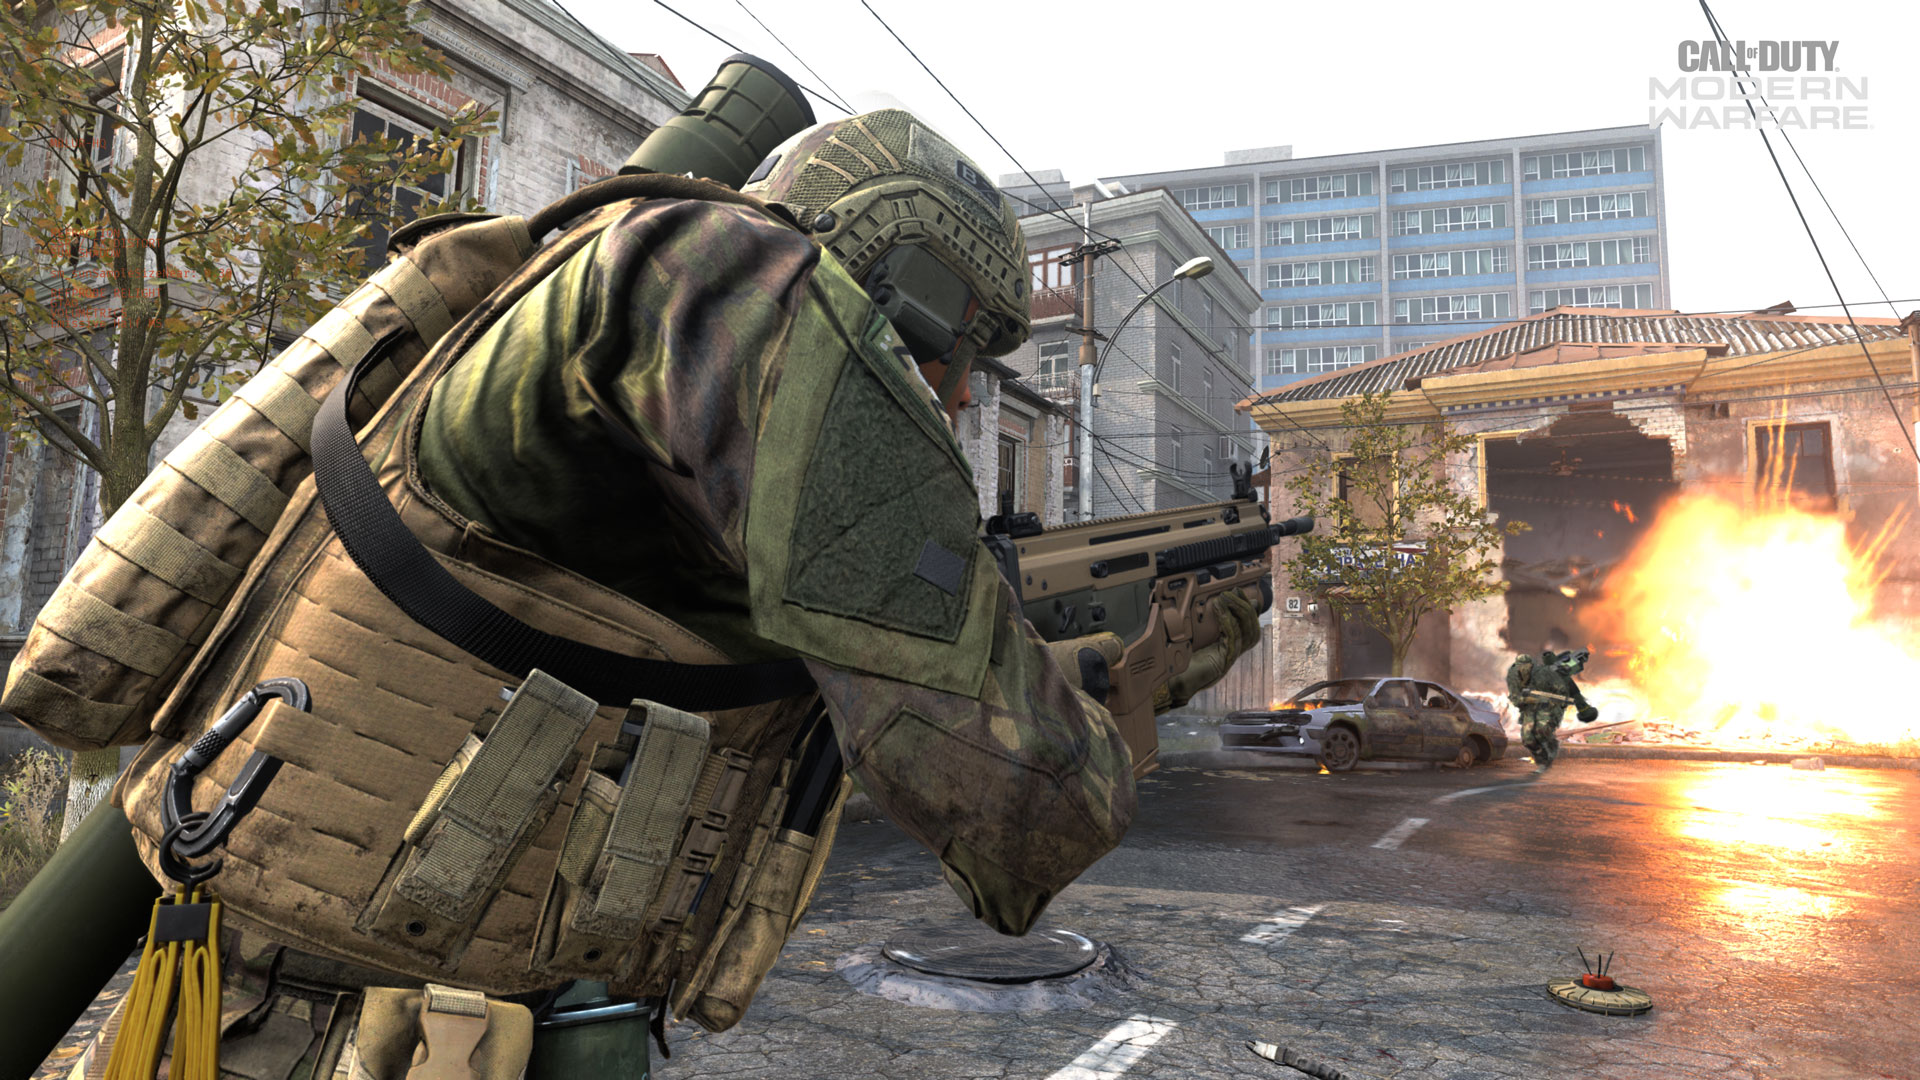 Five Loadouts to Try in Call of Duty®: Modern Warfare®